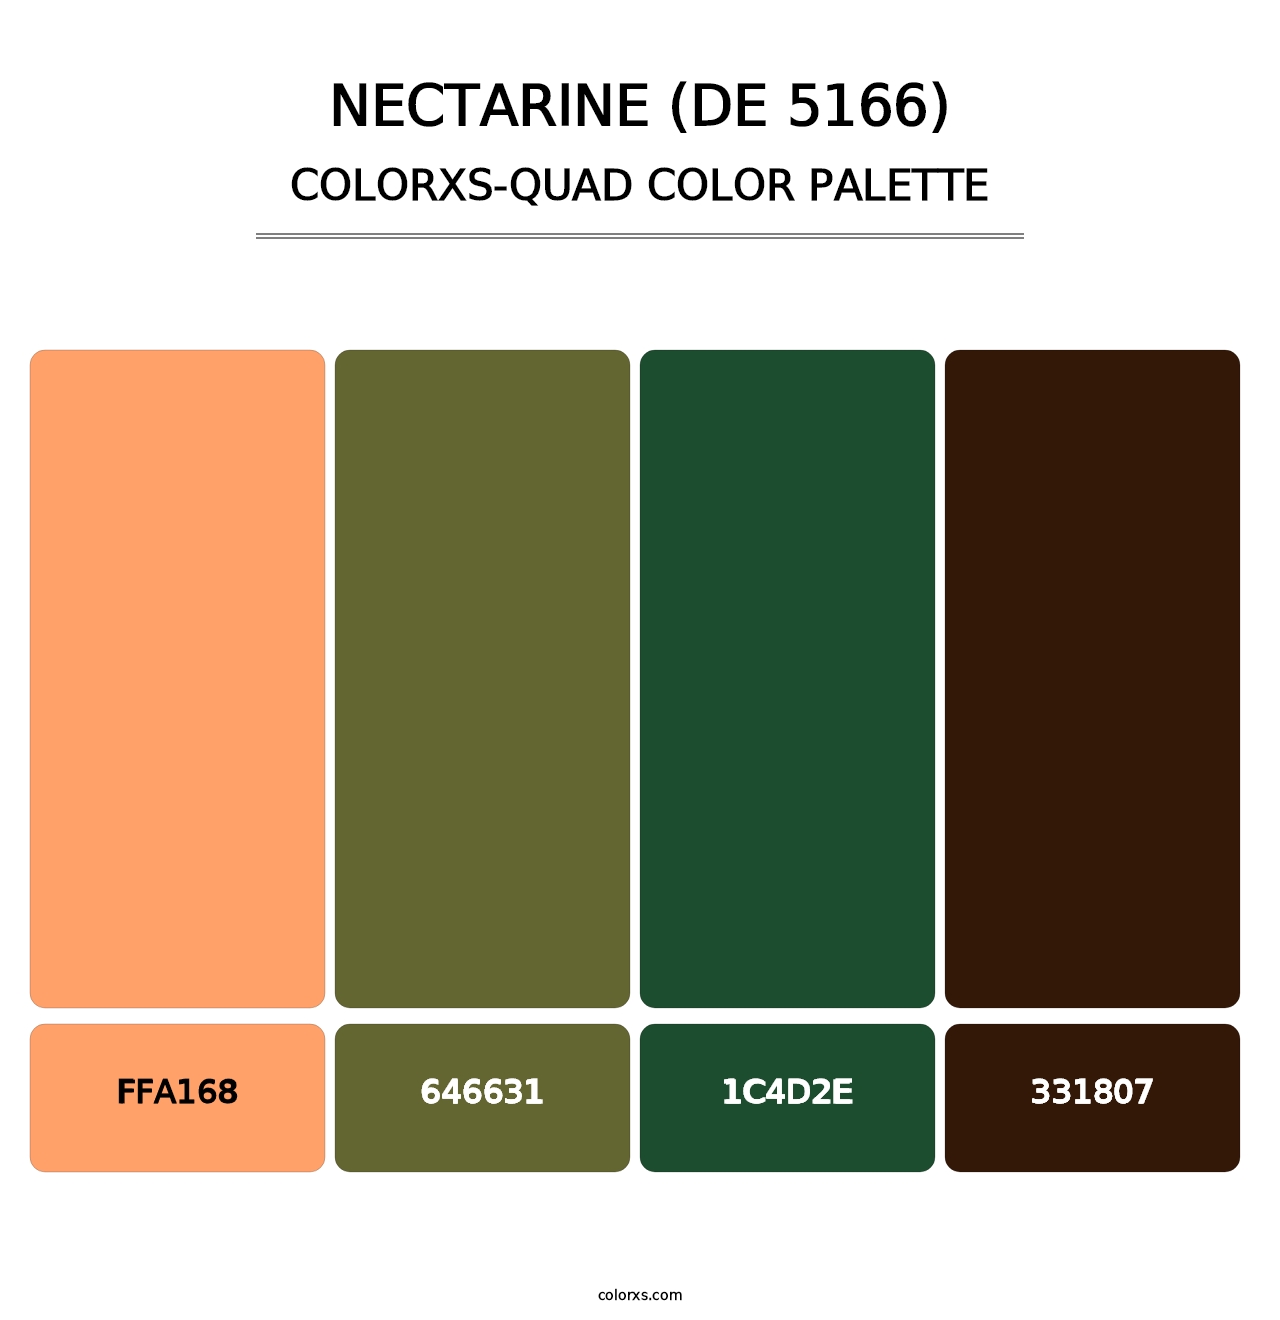 Nectarine (DE 5166) - Colorxs Quad Palette